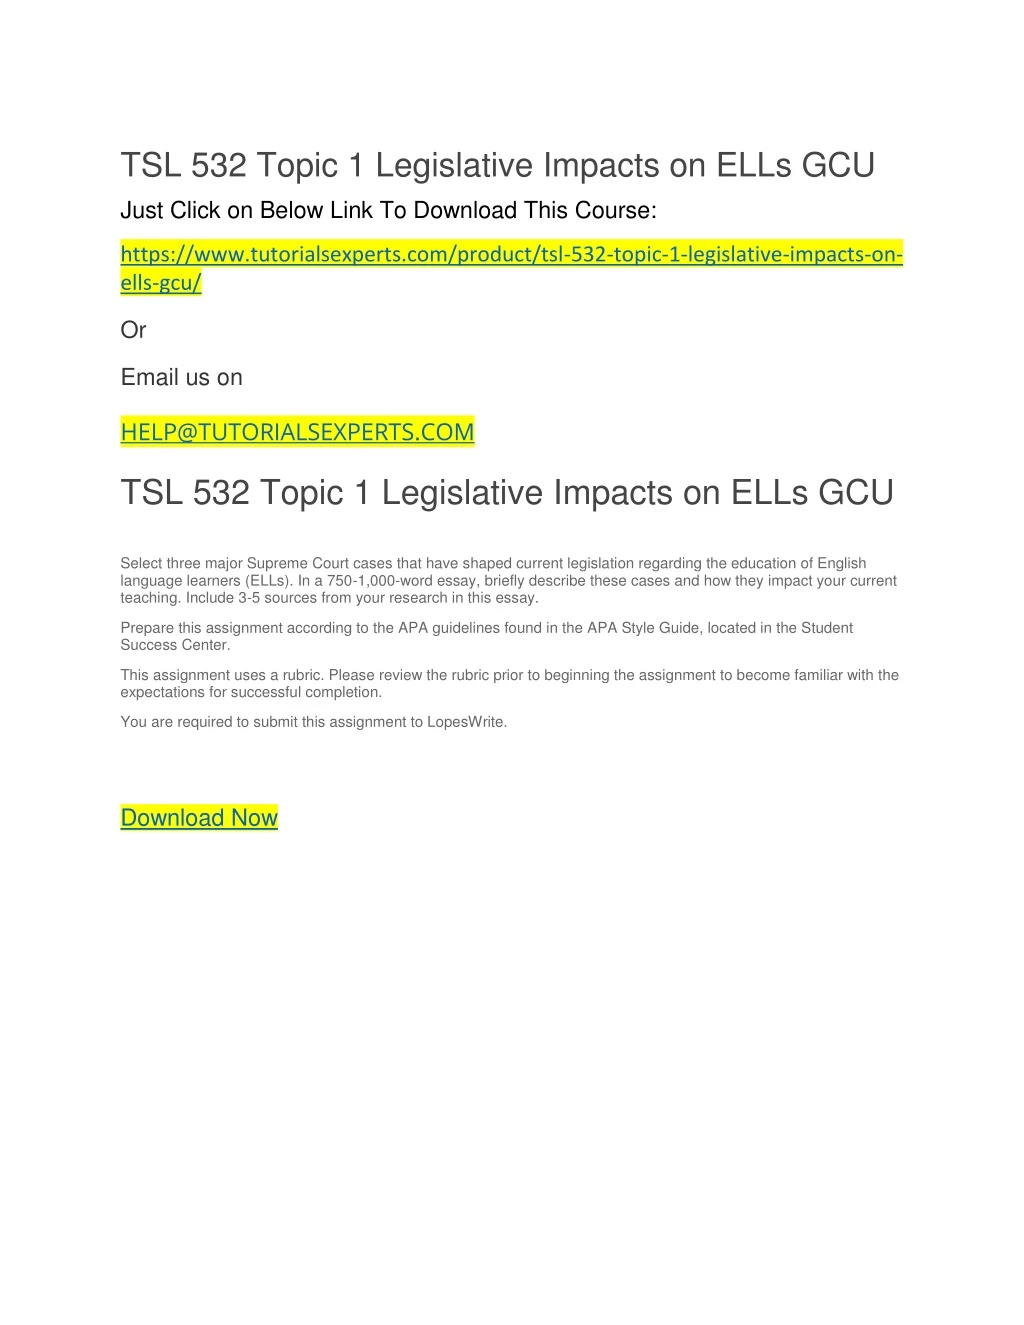 tsl 532 topic 1 legislative impacts on ells gcu